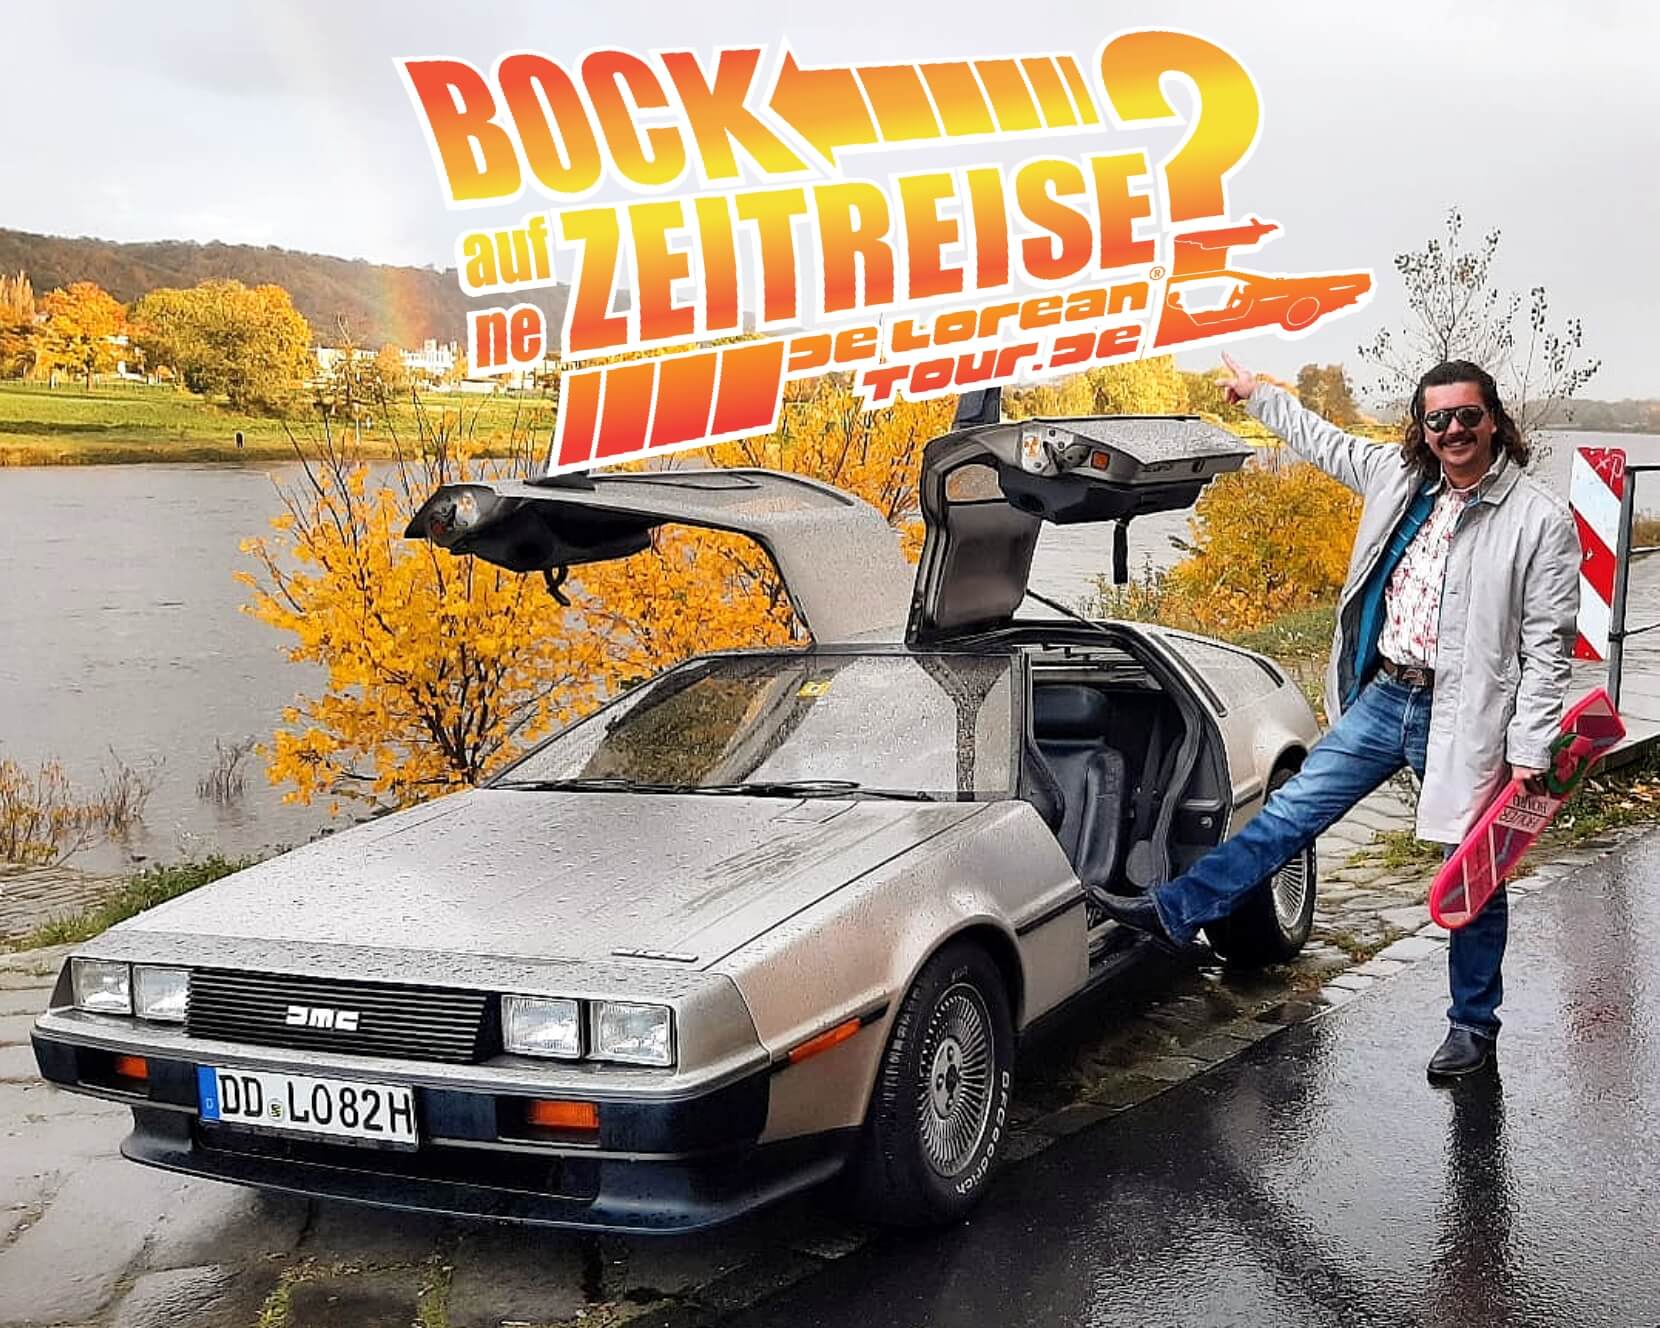 Zurück in die Zukunft: DeLorean bei felgenoutlet - felgenoutlet Blog -  Alles rund ums Rad, Events & die automotive Szene